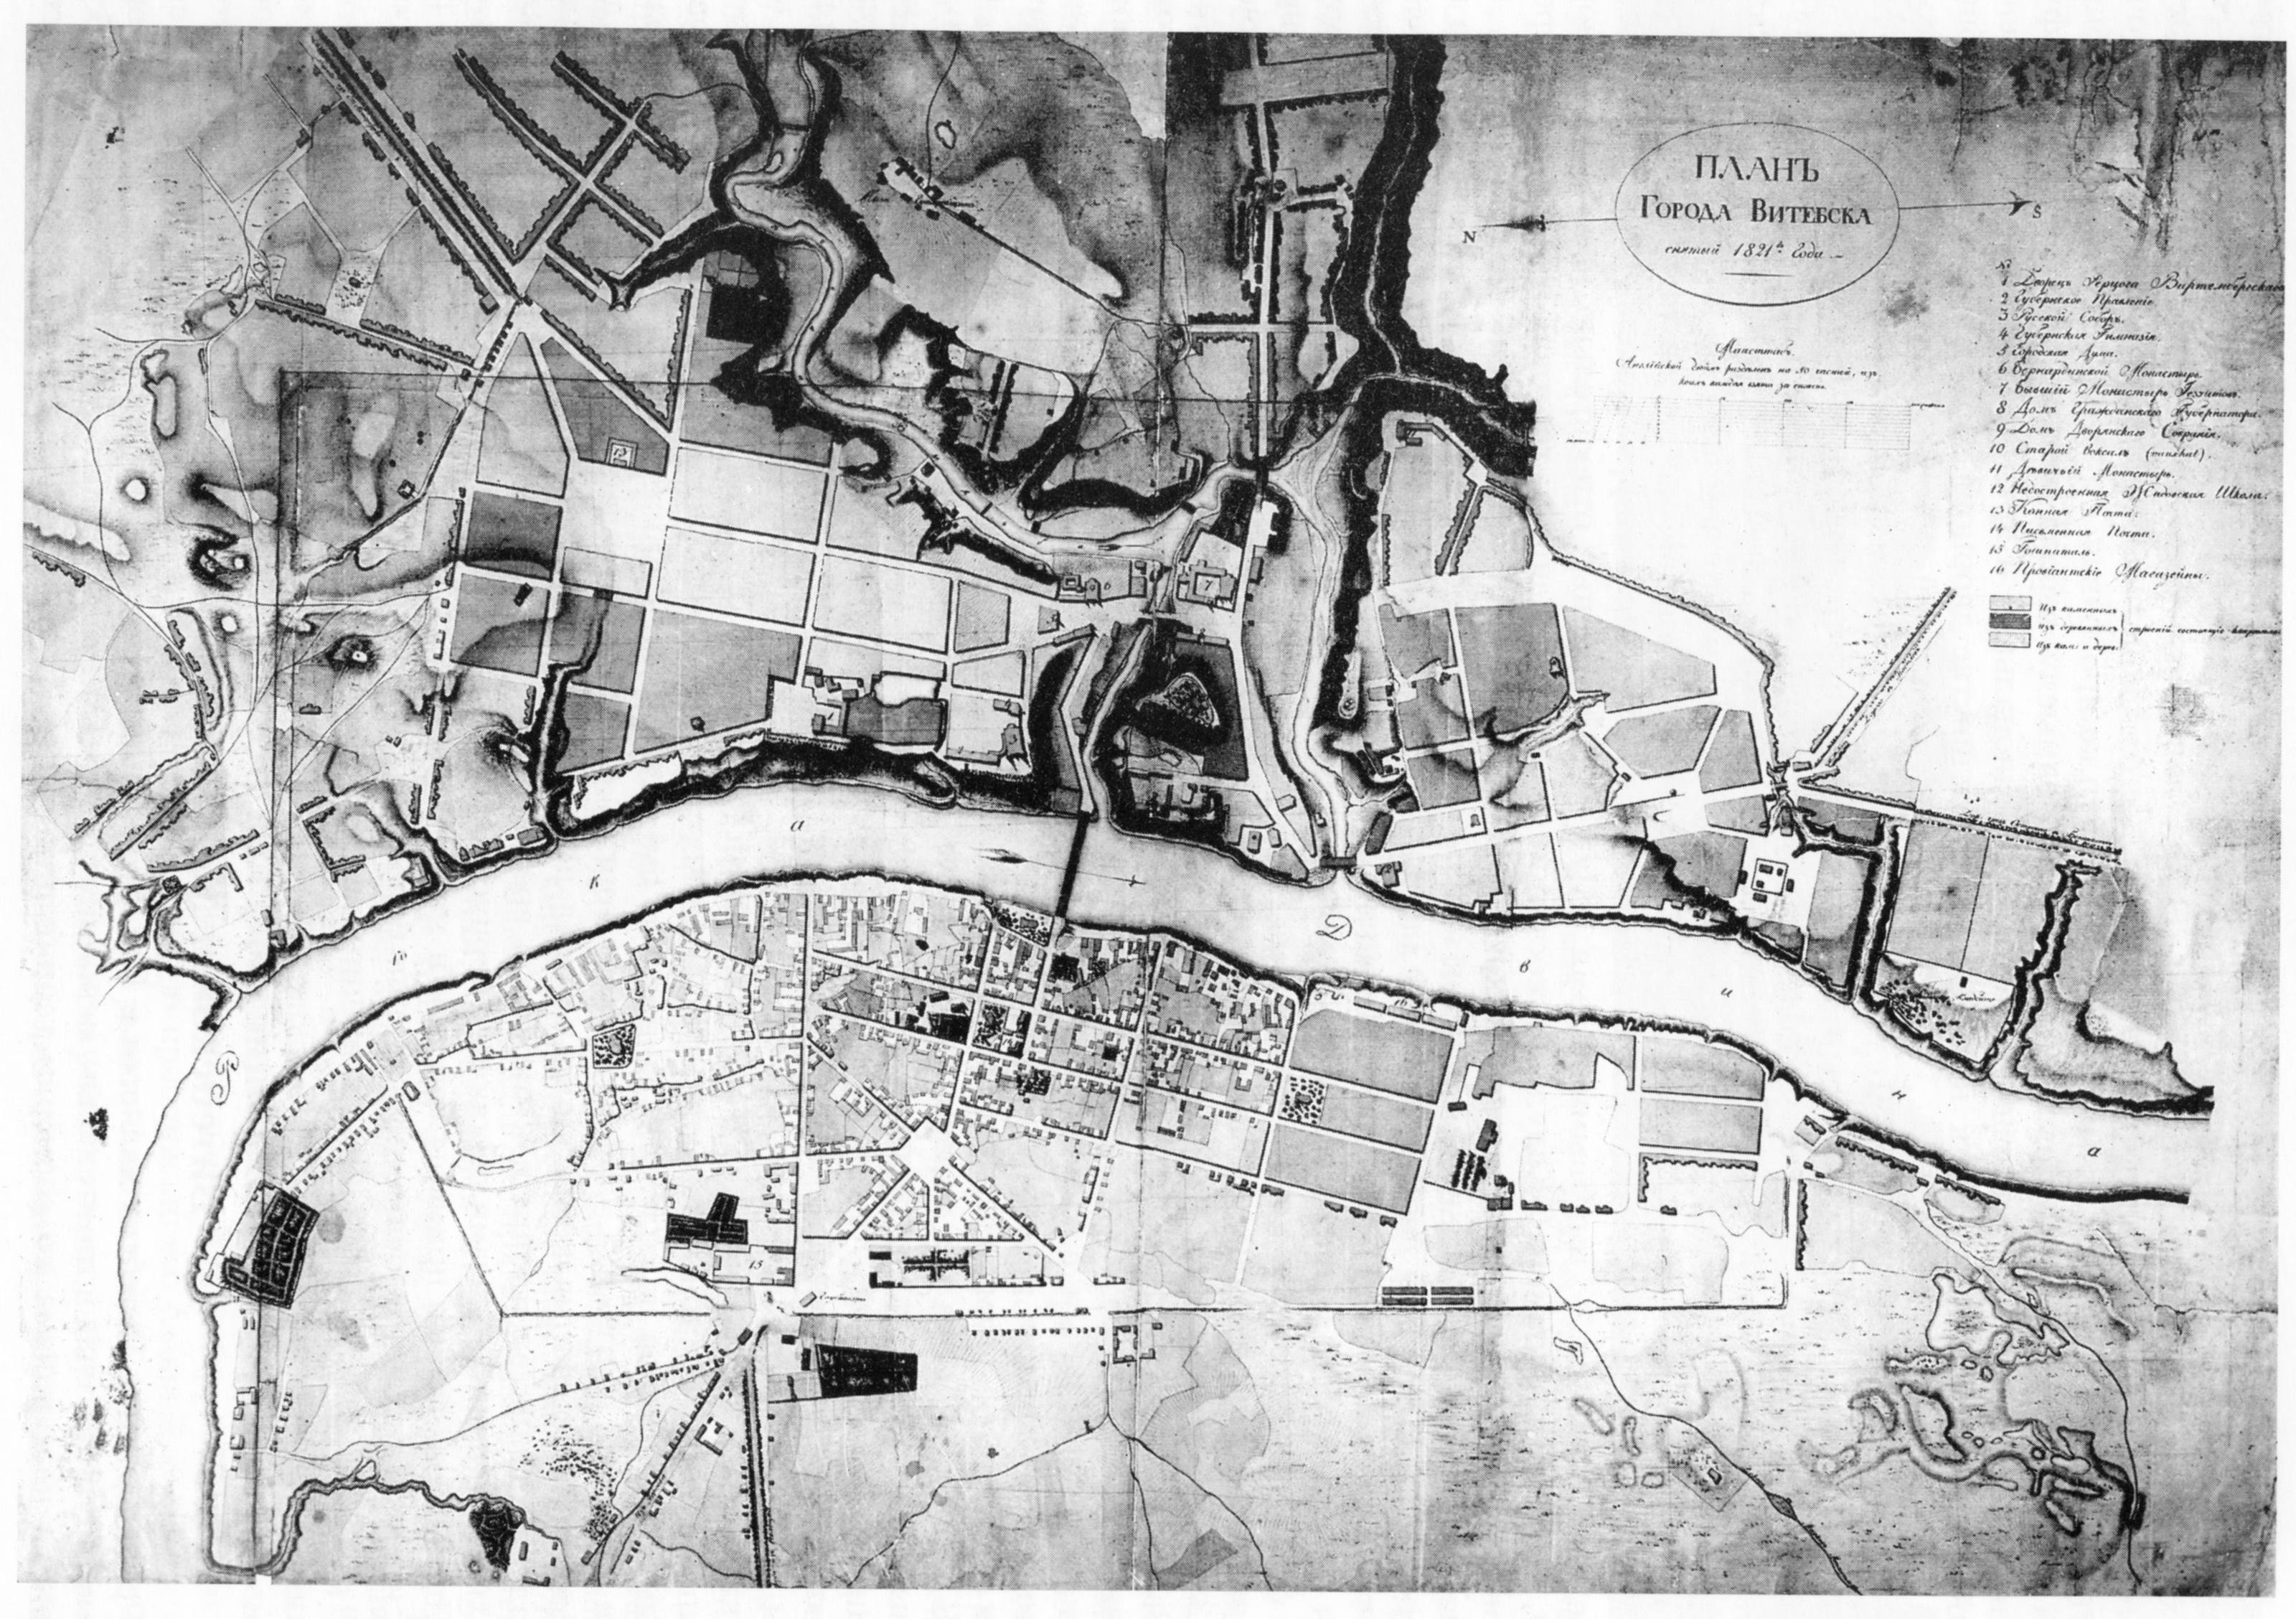 Карта Витебска 1821 г. - картинка карты 3200x2256